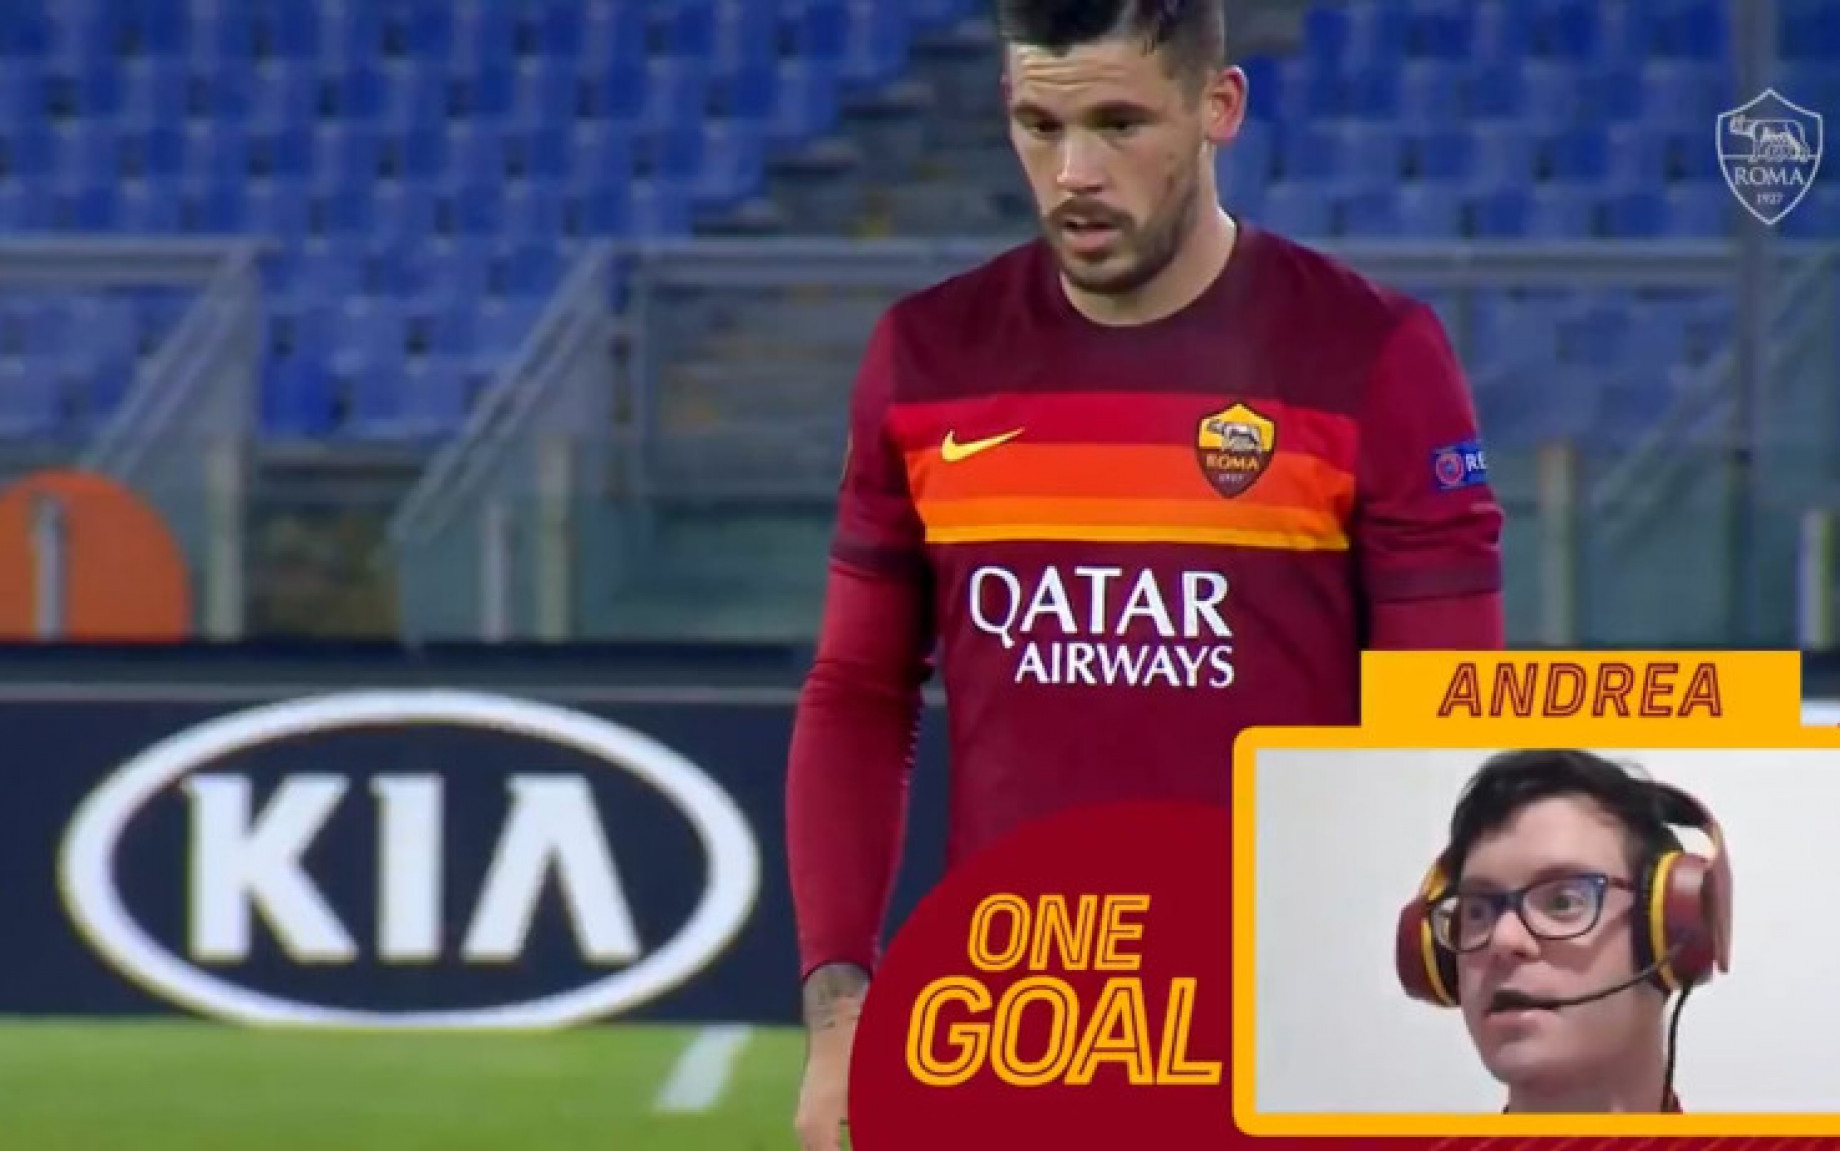 Roma_One_Goal_Screen.jpg